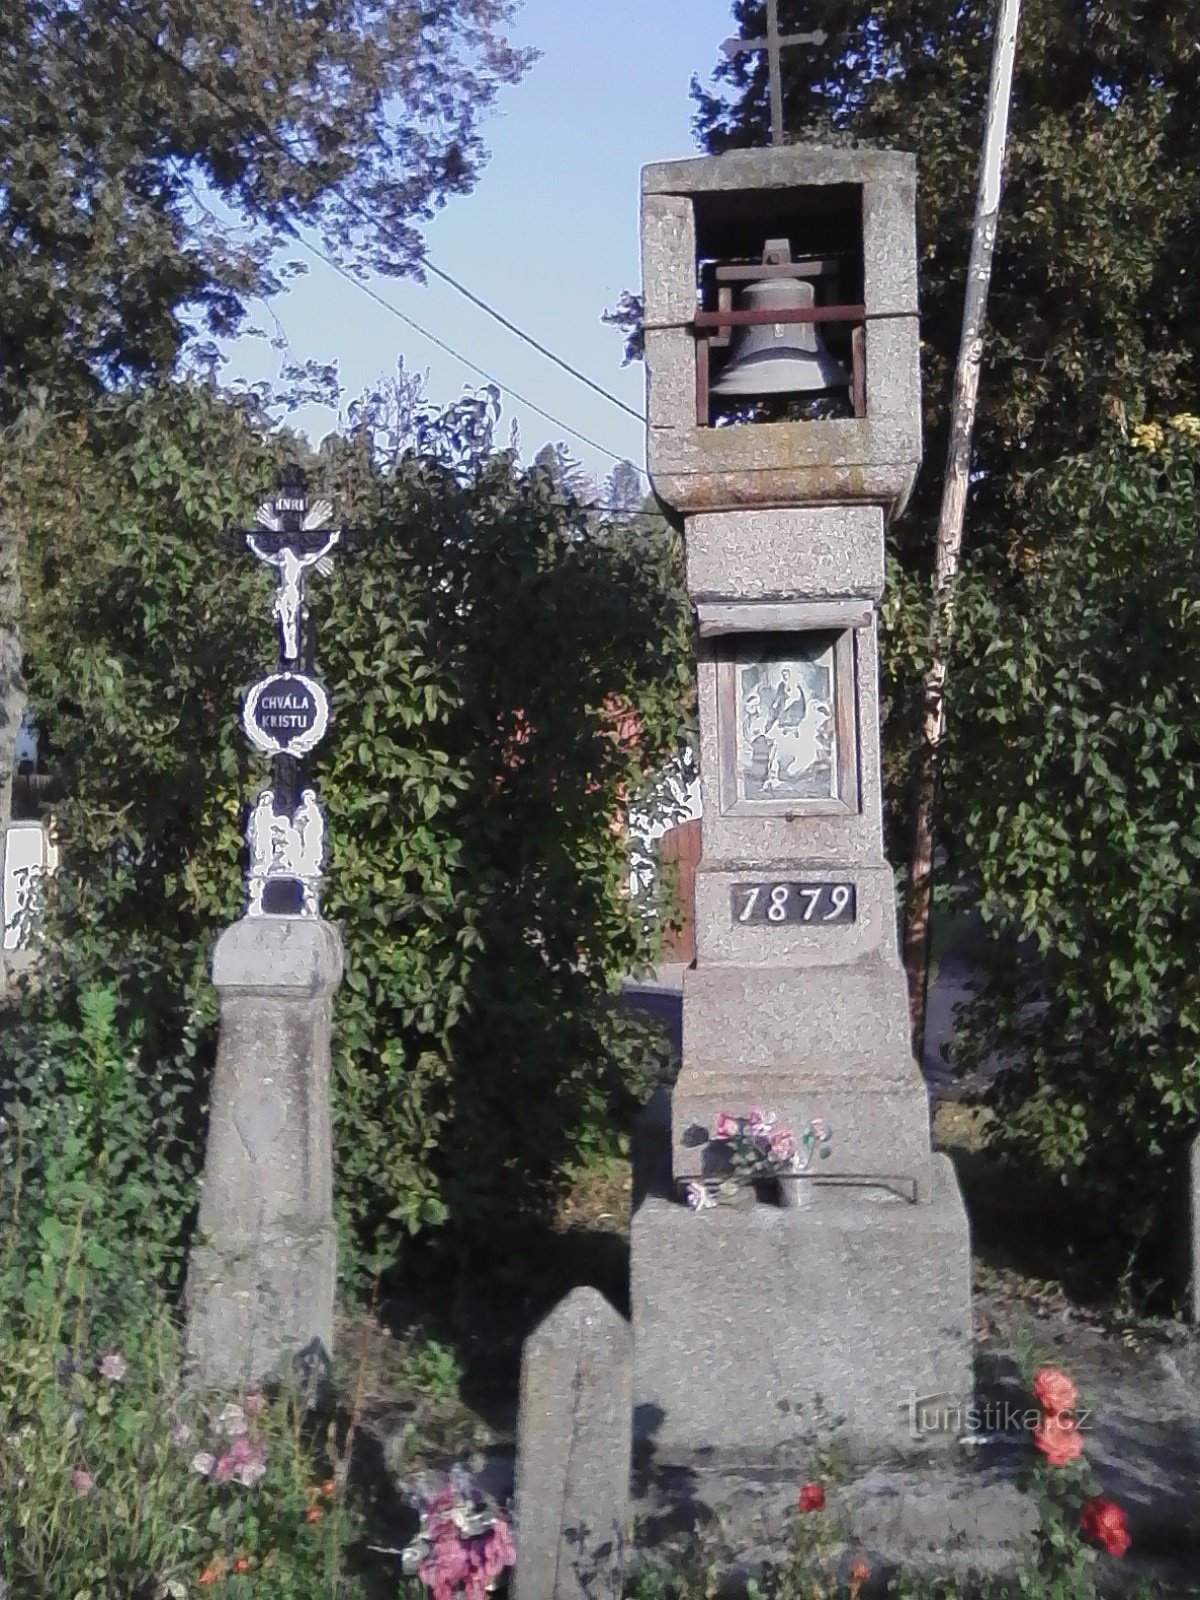 2. Uit steen gehouwen belfort met een kruis uit 1879 in Vilasová Lhota